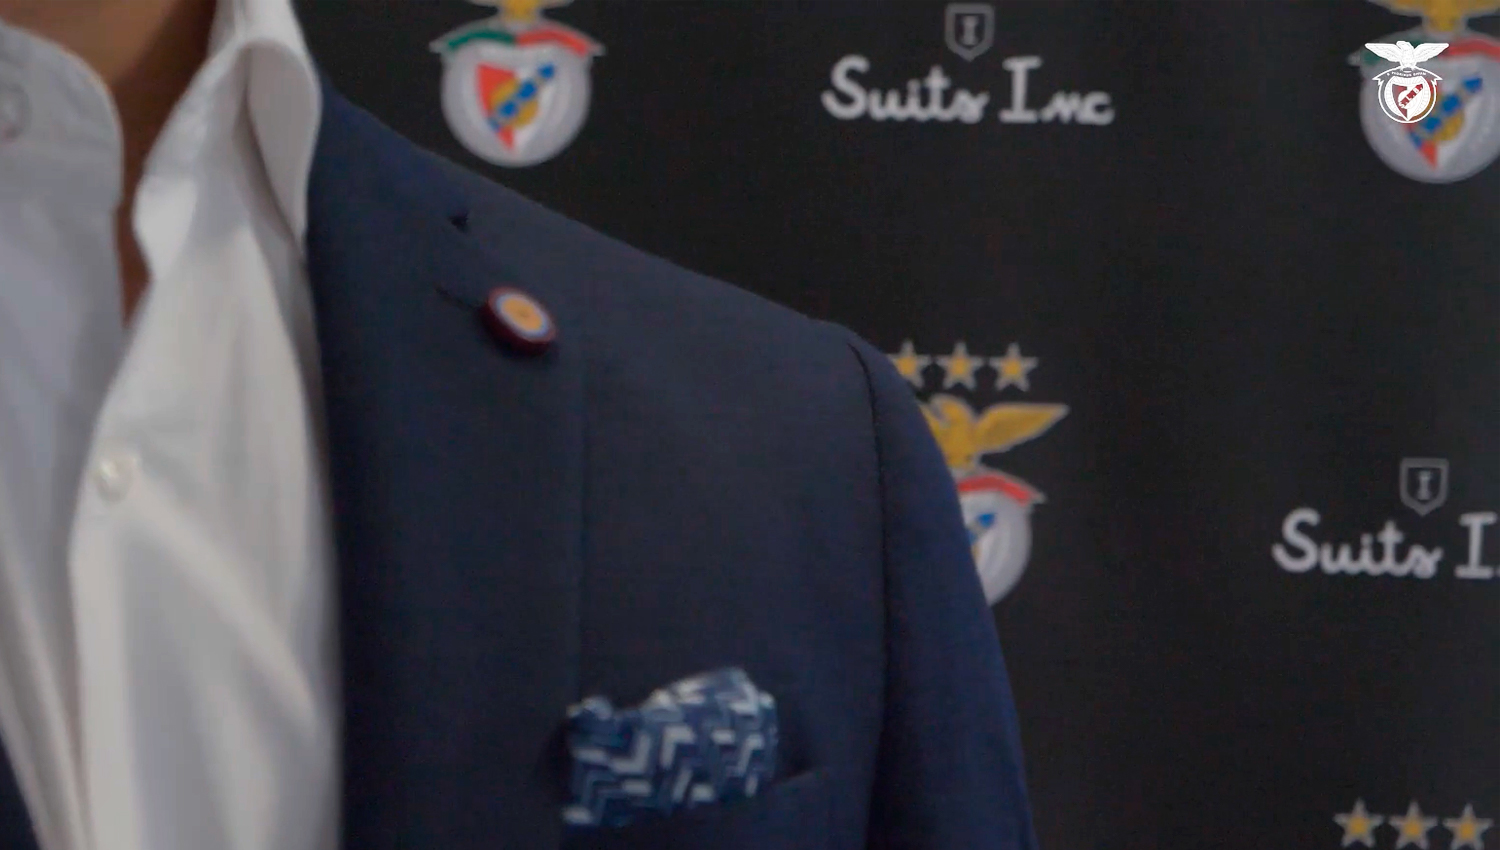 Suits Inc é o novo parceiro de indumentária do Sport Lisboa e Benfica